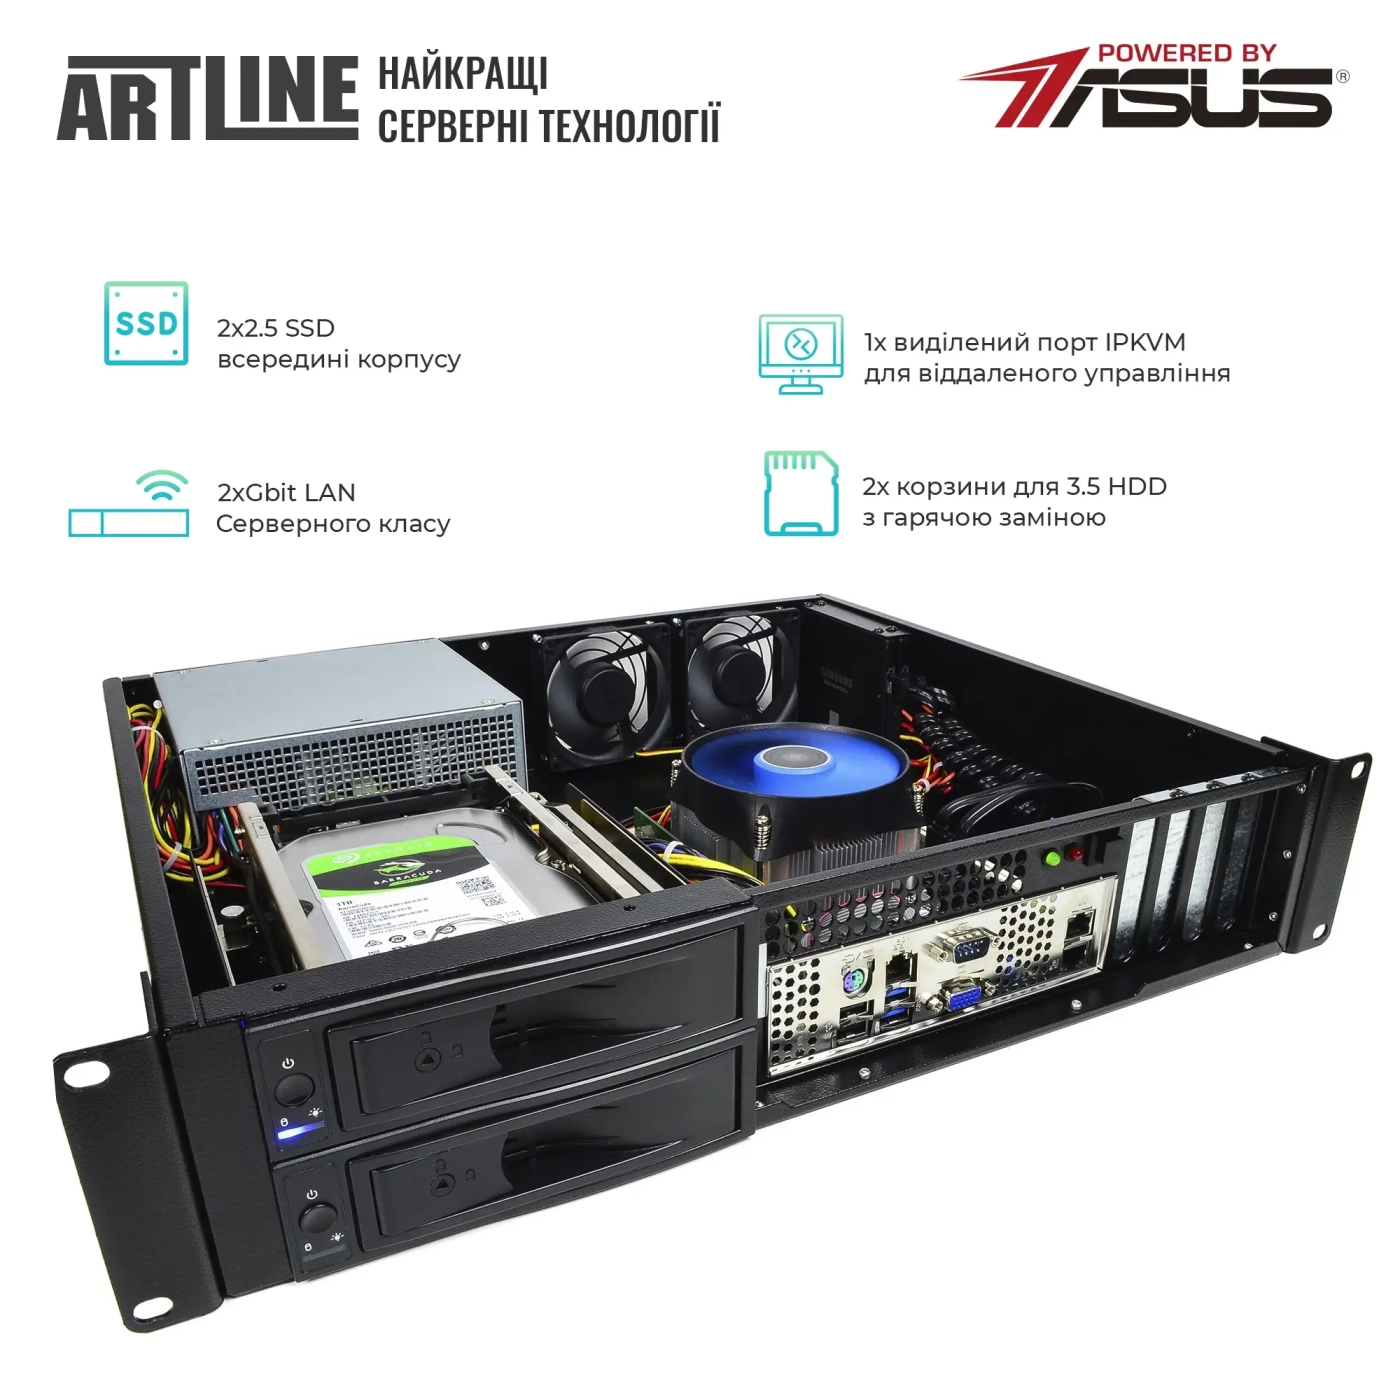 Купить Сервер ARTLINE Business R37 (R37v103) - фото 2